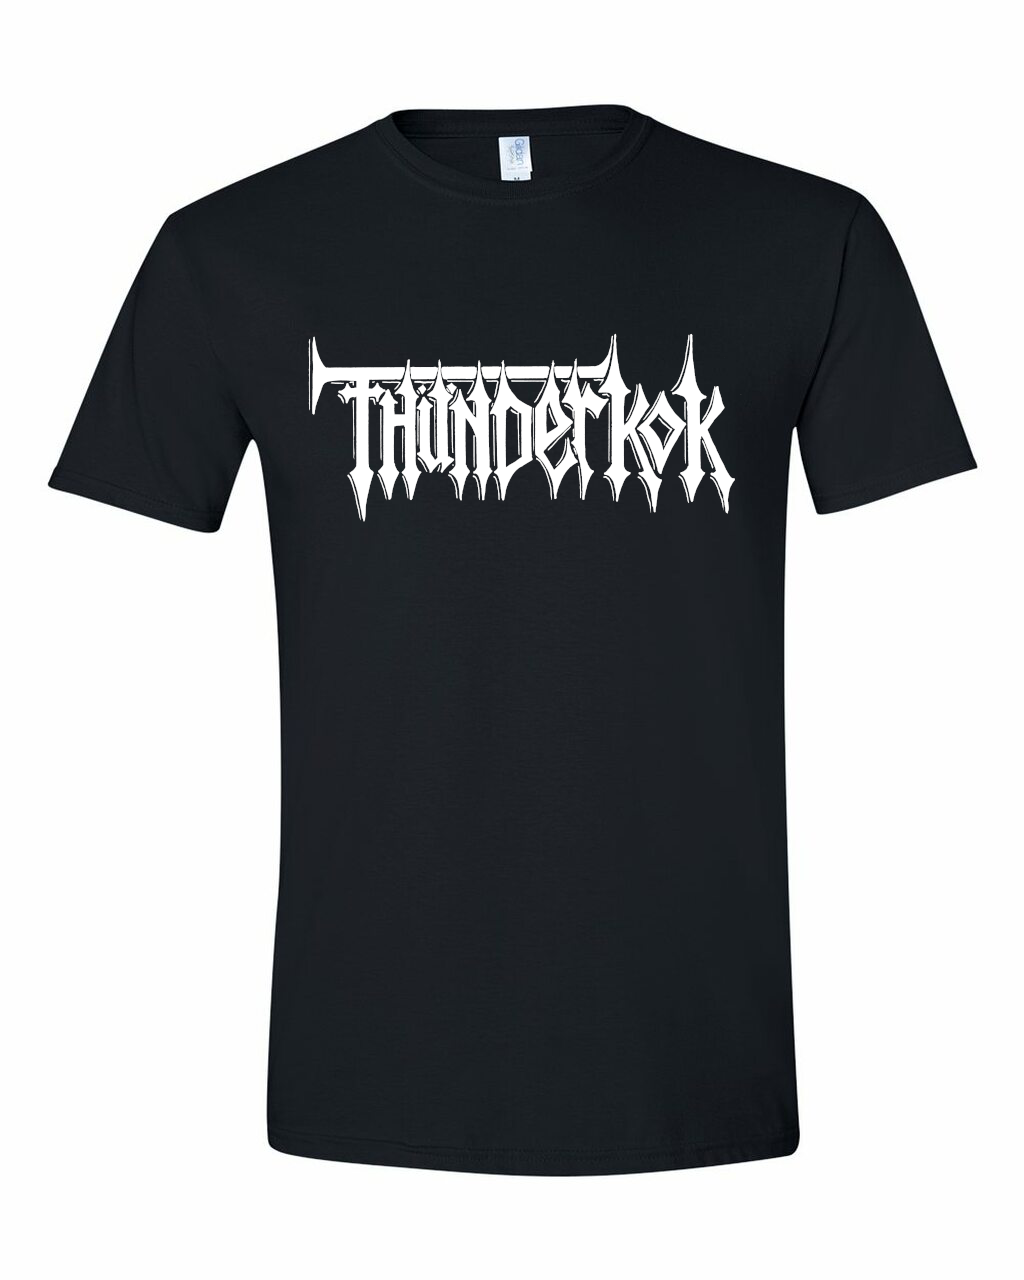 Thunderkok Logo Tee